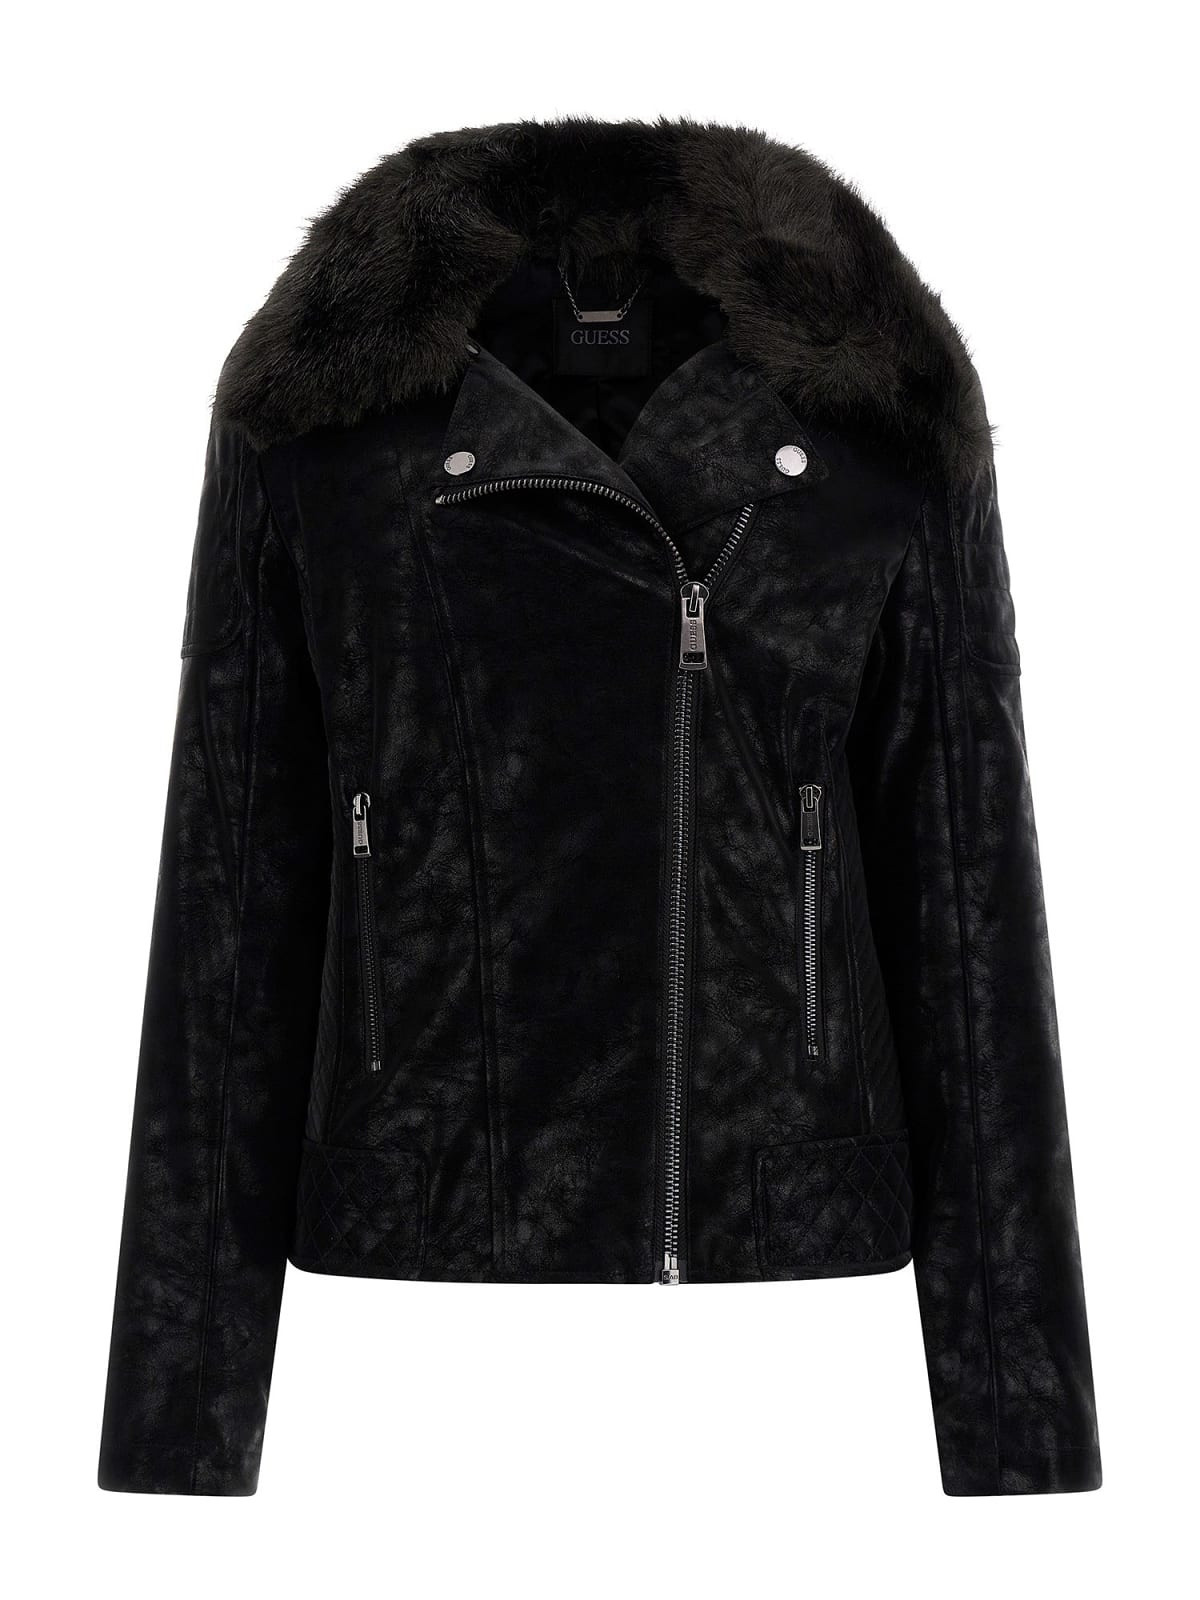 Shiny imitation leather jacket, Black, large image number 0